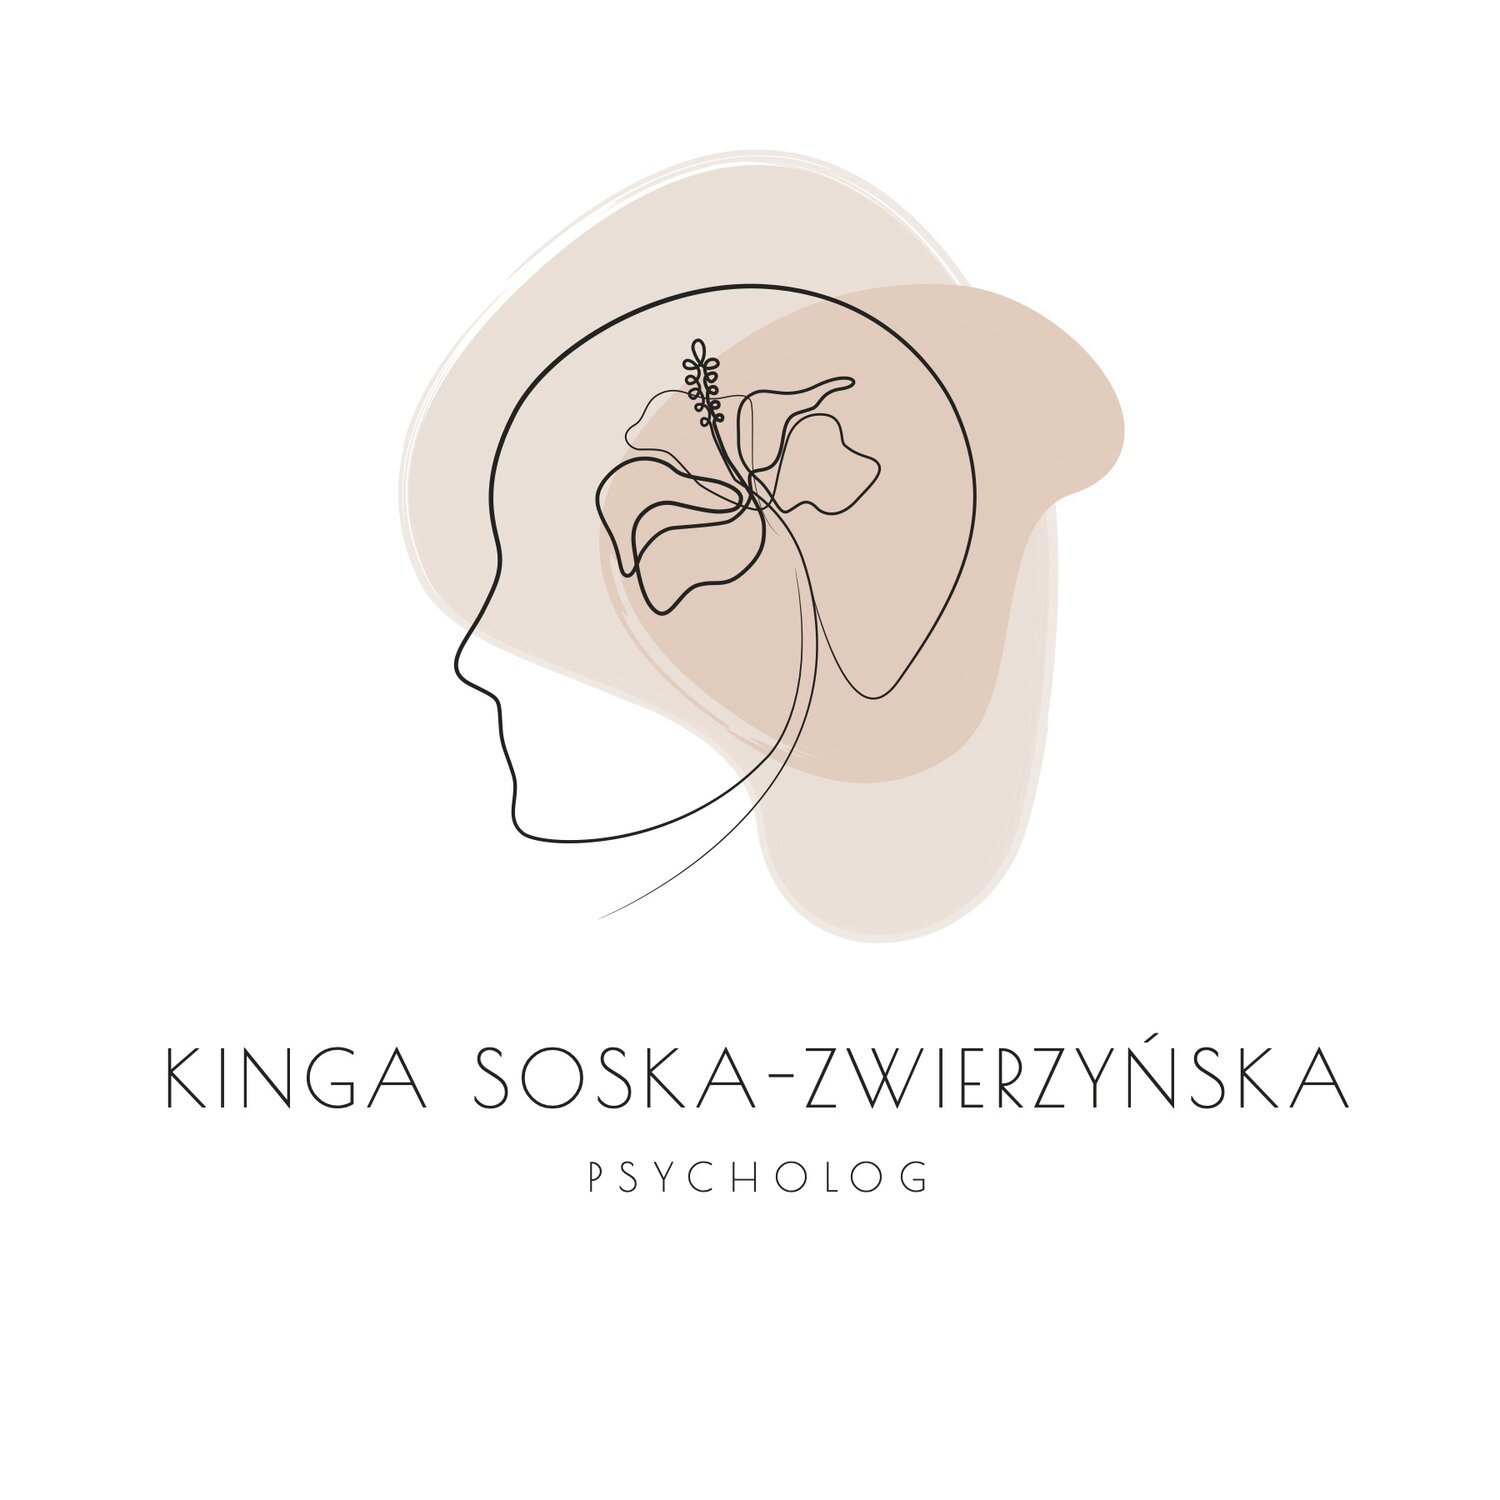 Psycholog Kinga Soska-Zwierzyńska